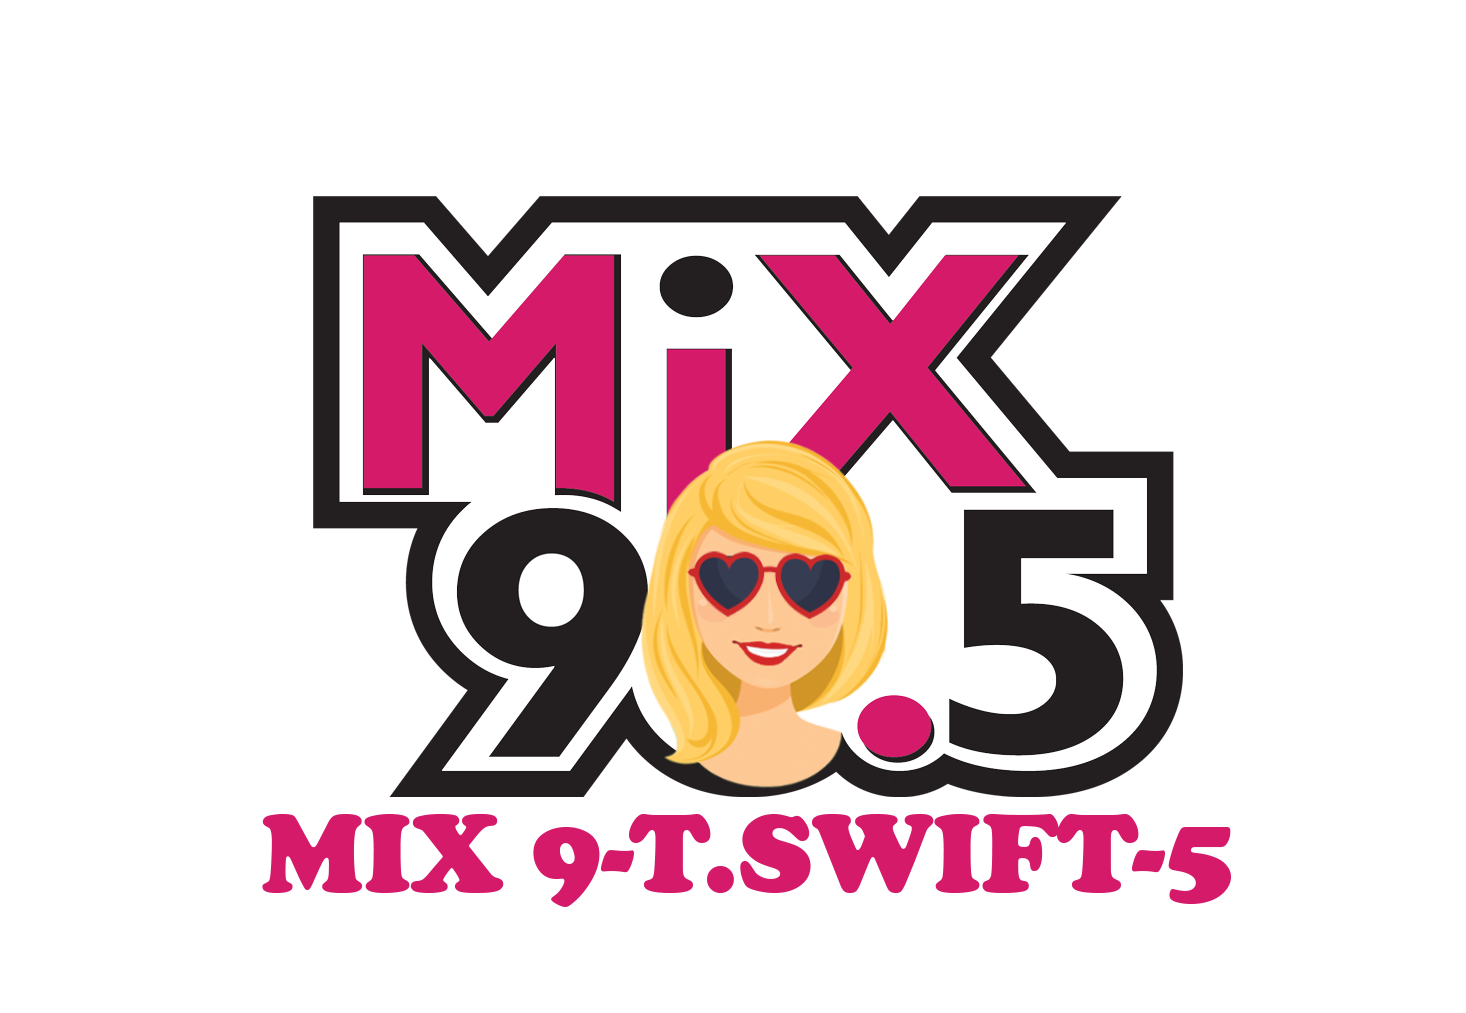  KHMX (Mix 96.5)/Houston Celebrates Taylor Swift Era’s Tour This Weekend